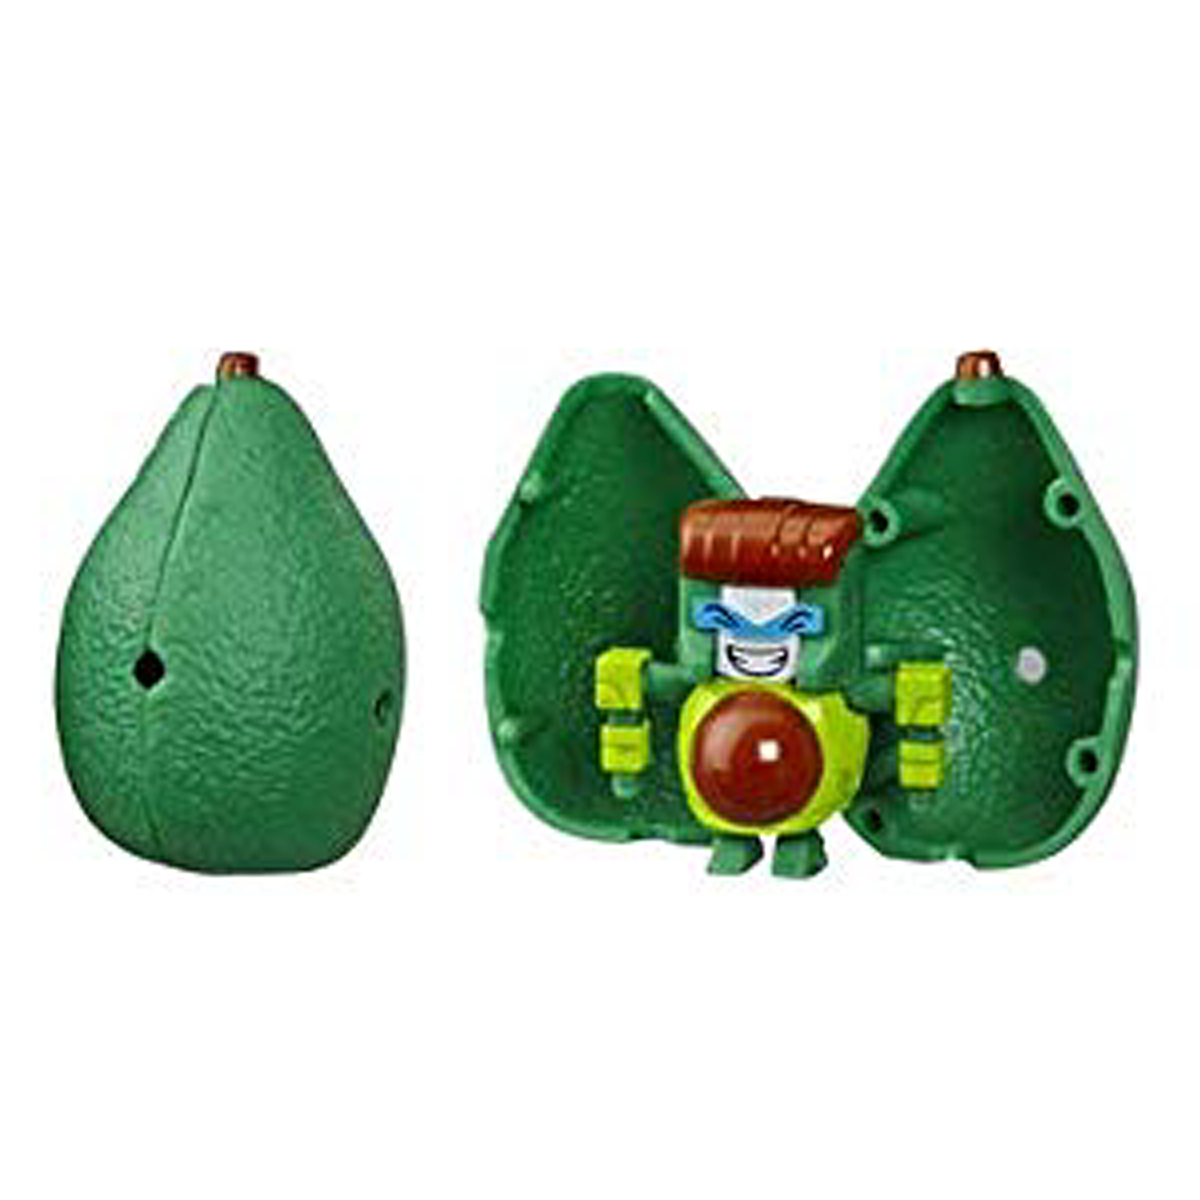 AVOCANDO Transformers BotBots Series 3 Fresh Squeezes avocado 2019 Hasbro